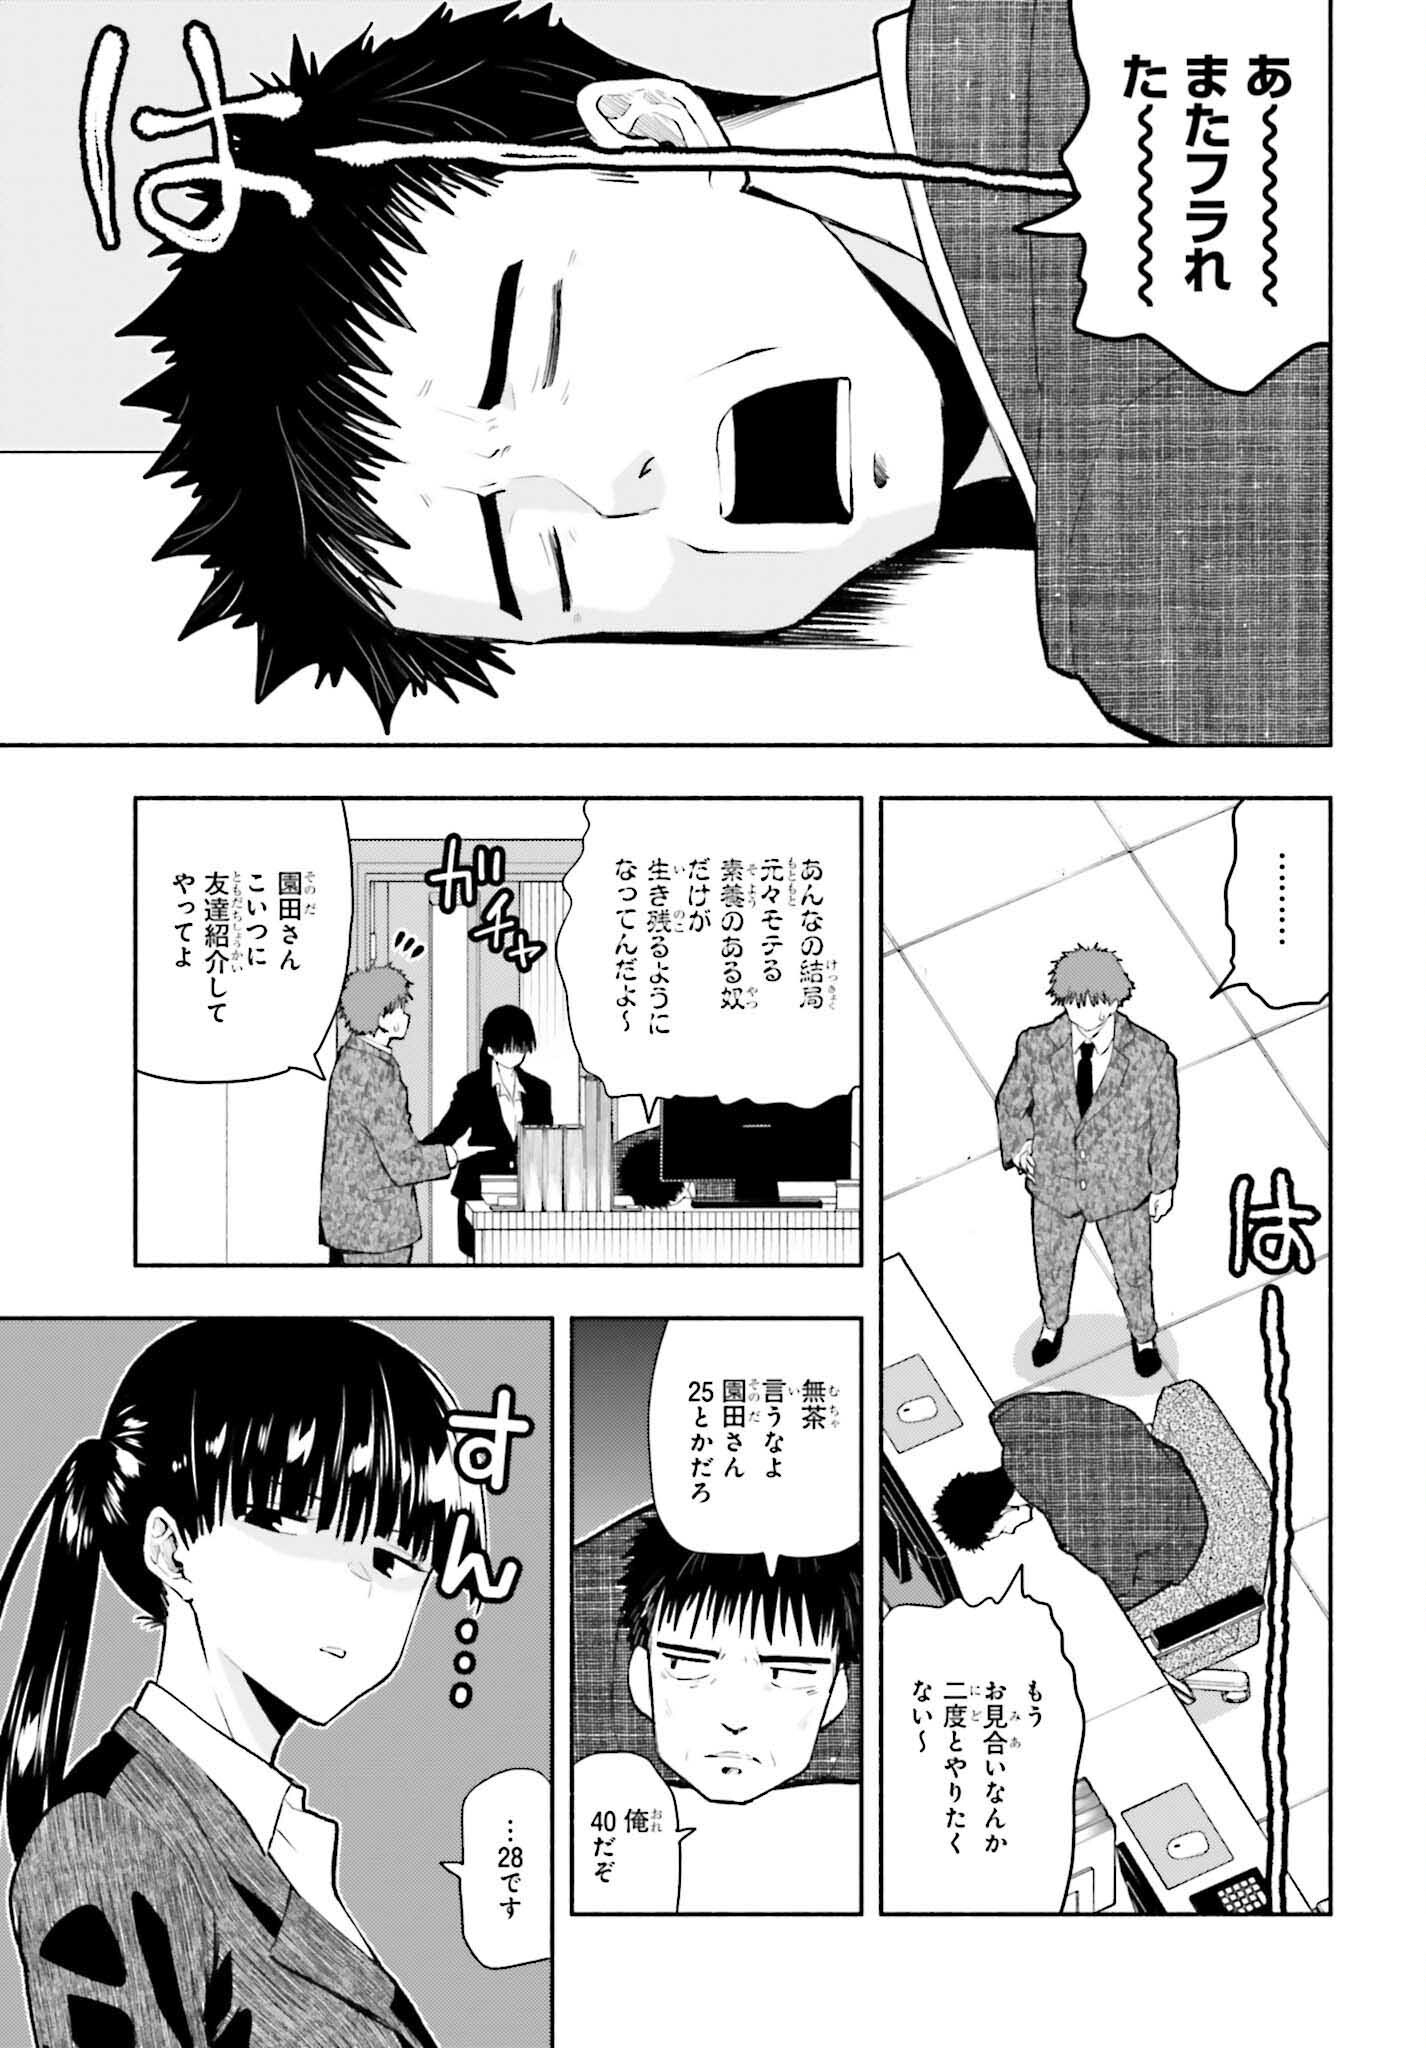 Omiai ni Sugoi Komyushou ga Kita - Chapter 1 - Page 3